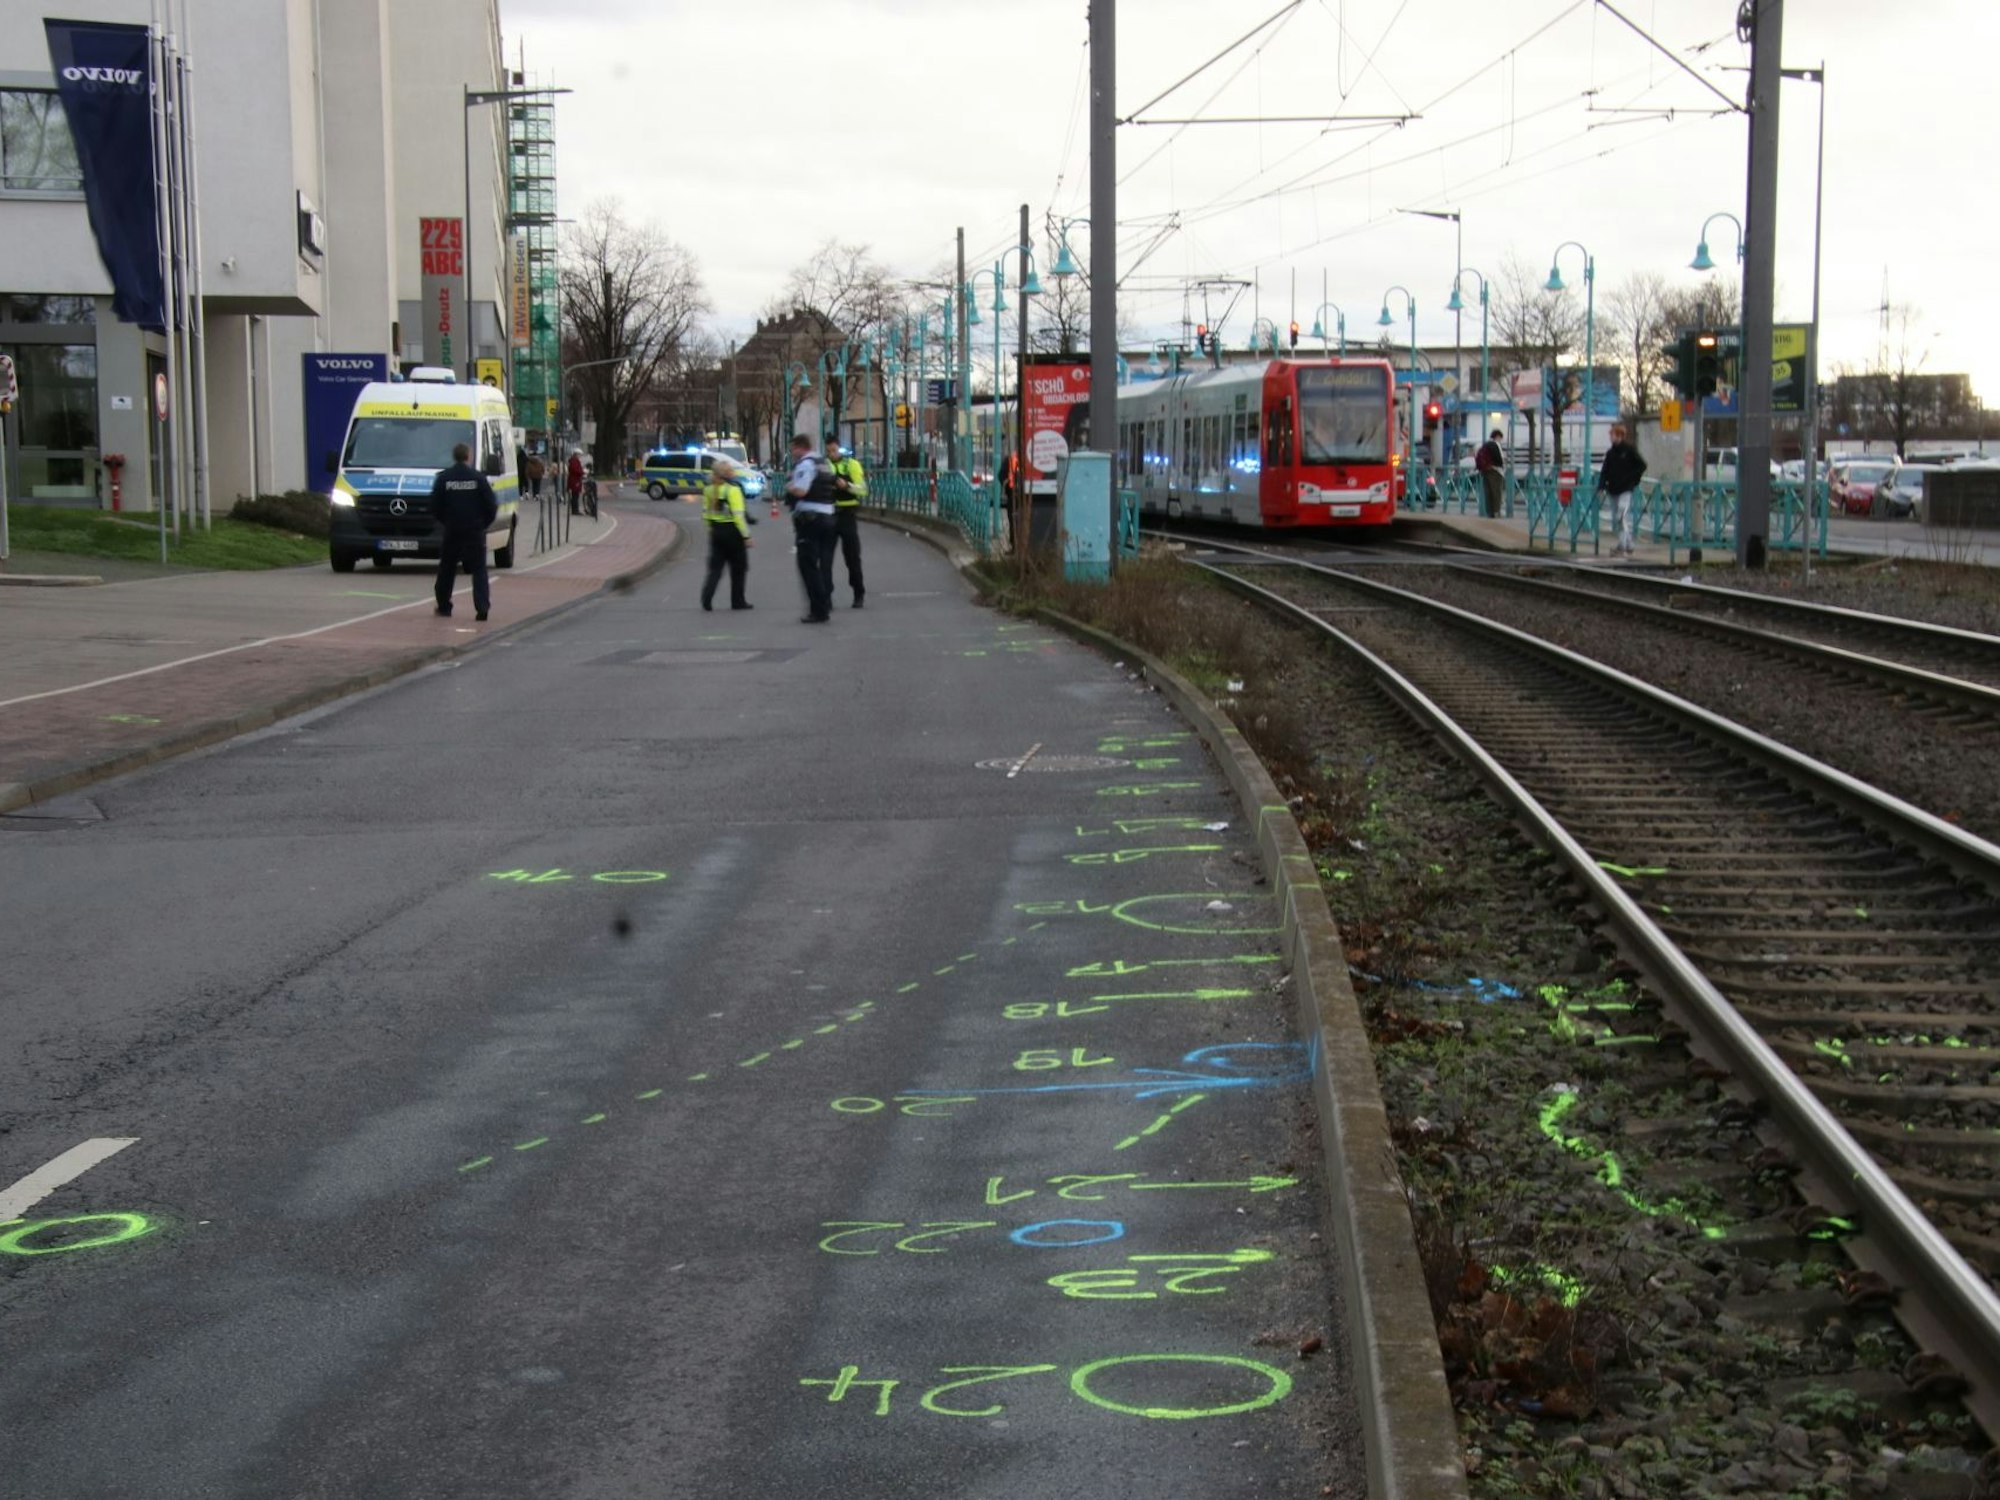 Die Fahrbahn ist von Markierungen übersät, anhand deren die Polizei den folgenschweren Unfall detailgenau rekonstruiert.